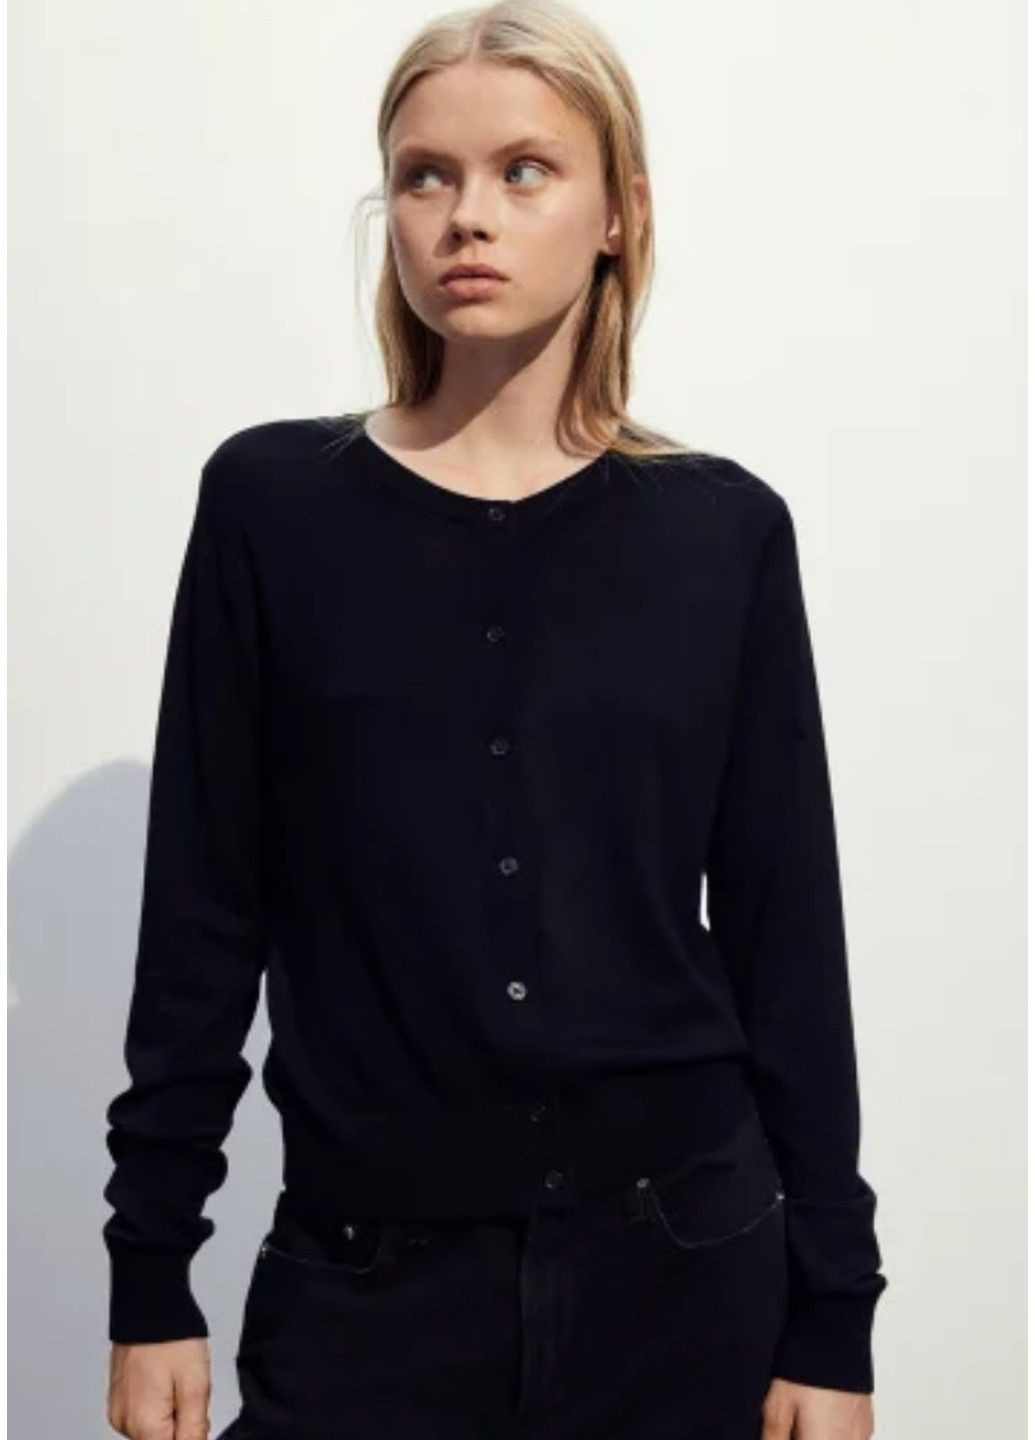 Черный демисезонный женский свитер тонкой вязки на пуговицах н&м (56586) xs черный H&M